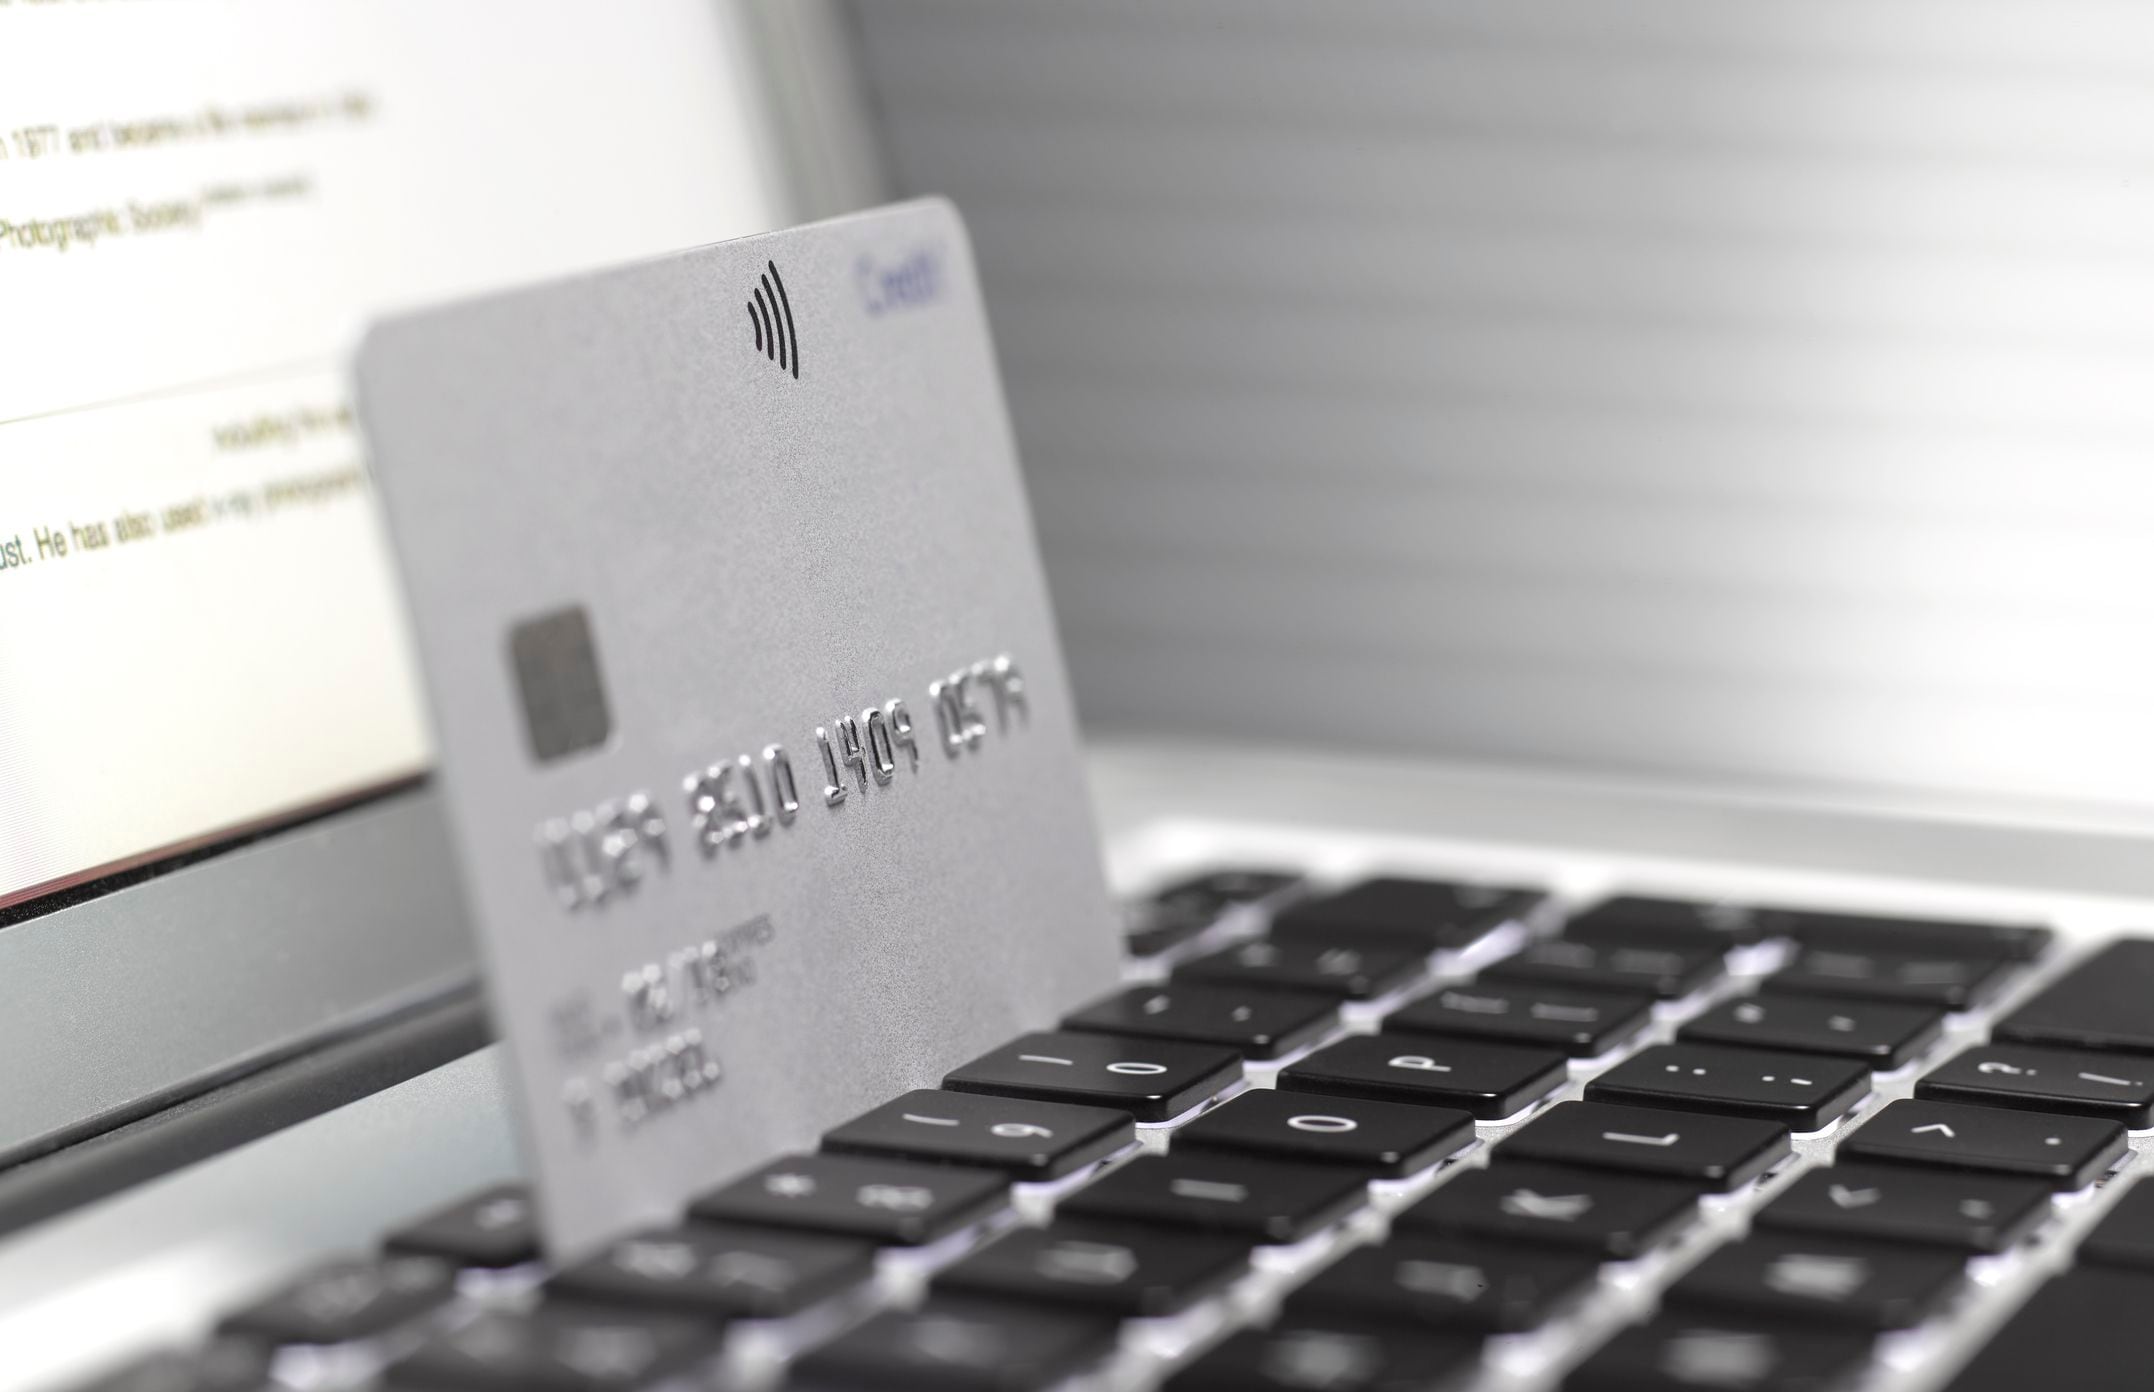 inteligencia artificial revela la forma más ‘sabia’ de usar las tarjetas de crédito para evitar caer en deudas